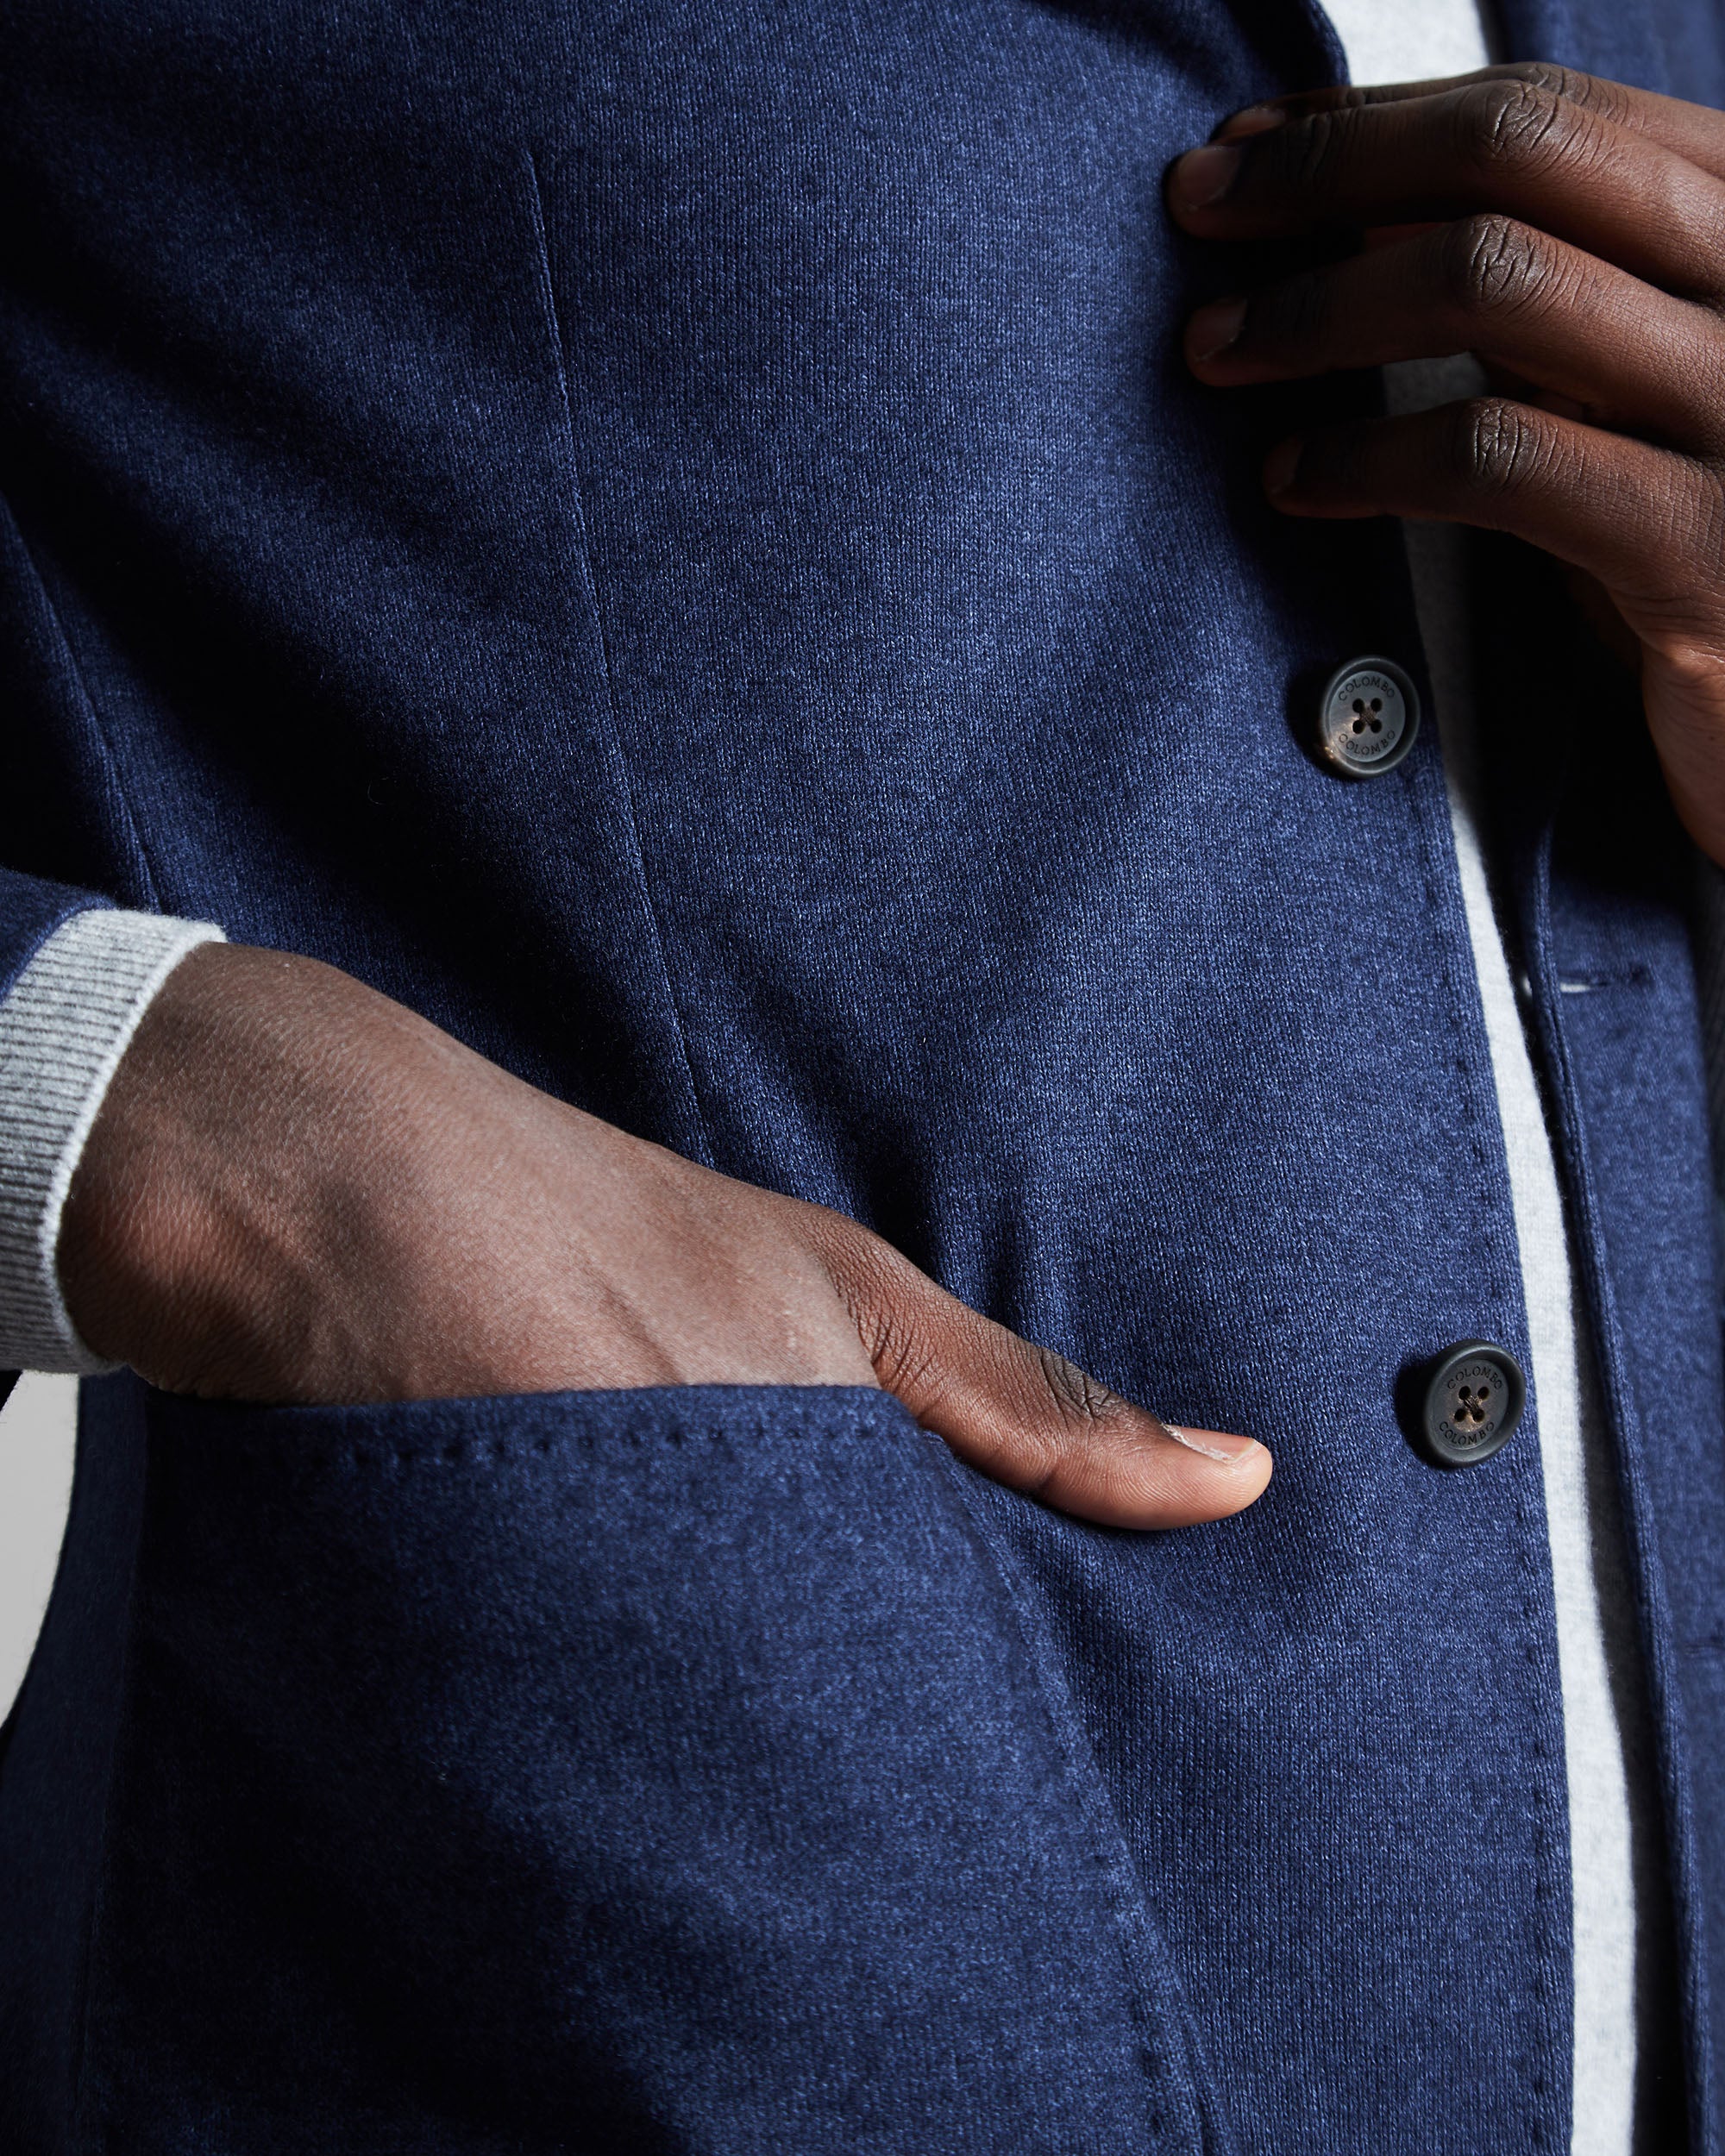 Blue cashmere fleece blazer